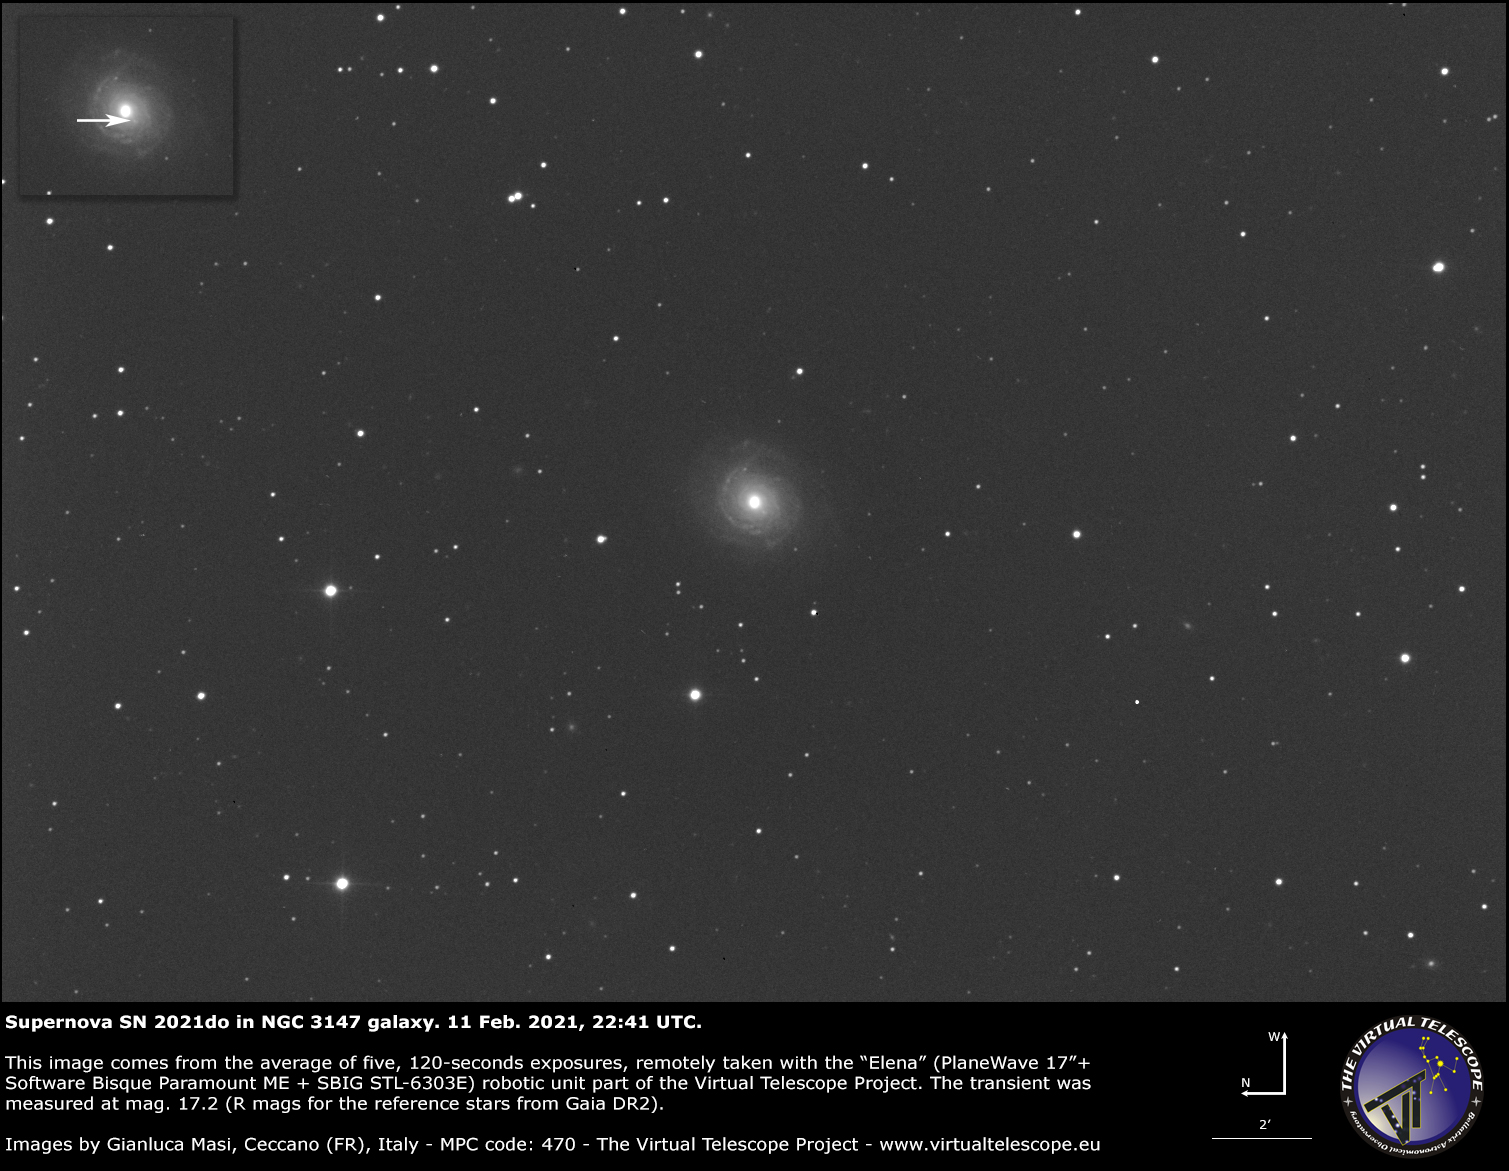 Supernova SN 2021do in NGC 3147 galaxy: 11 Feb. 2021.